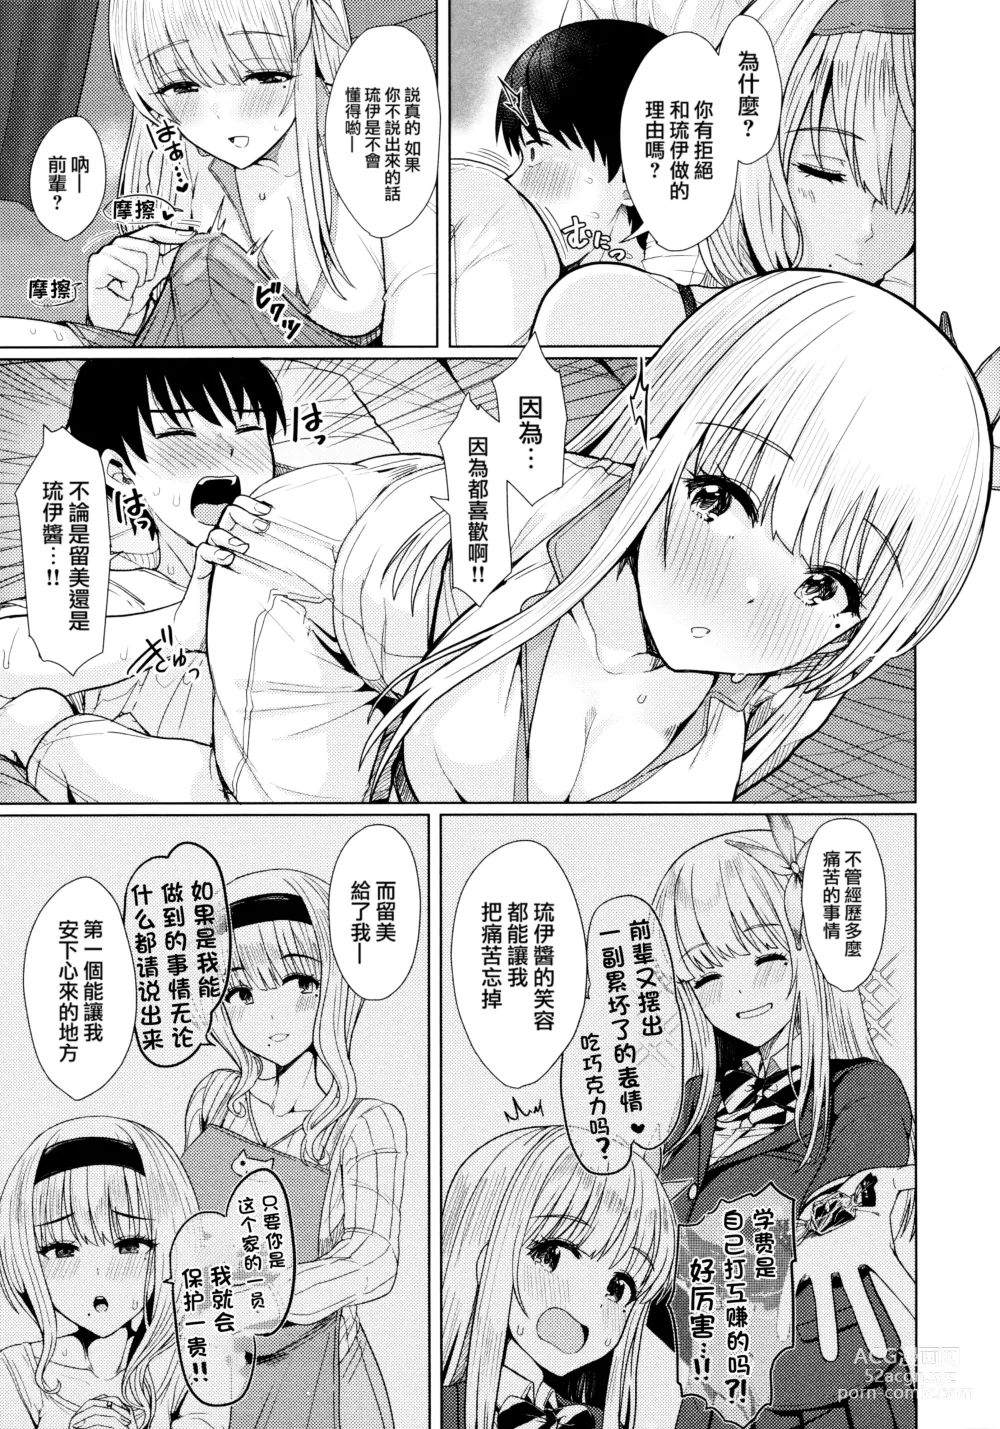 Page 11 of manga Nukunuku Seikatsu - Life Full of Sex + Melonbooks Kounyu Tokuten + Toranoana Kounyu Tokuten